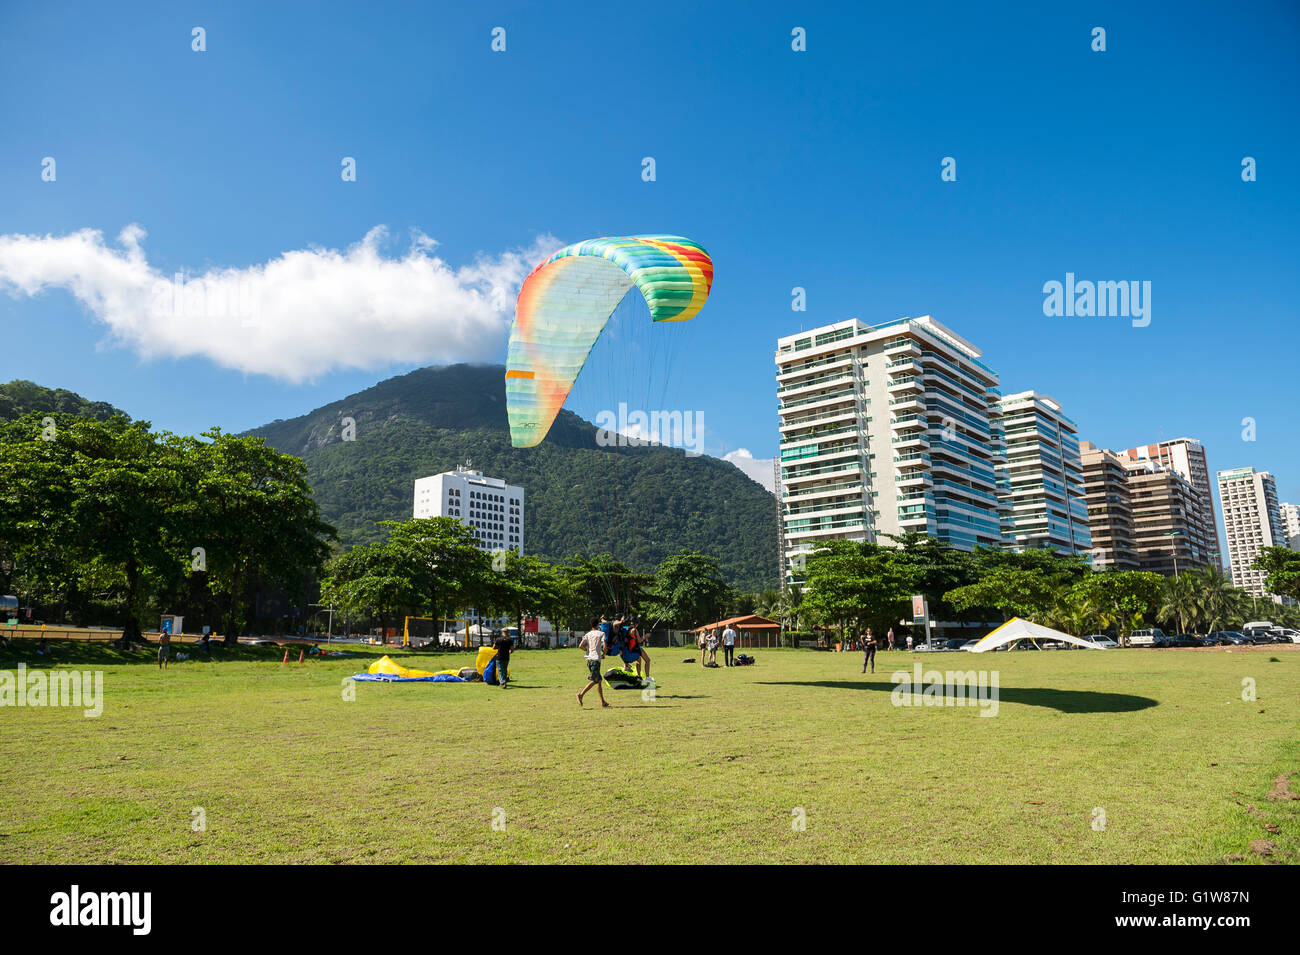 RIO DE JANEIRO - MARCH 19, 2016: Paraglider lands on the landing field beside the beach at Sao Conrado. Stock Photo